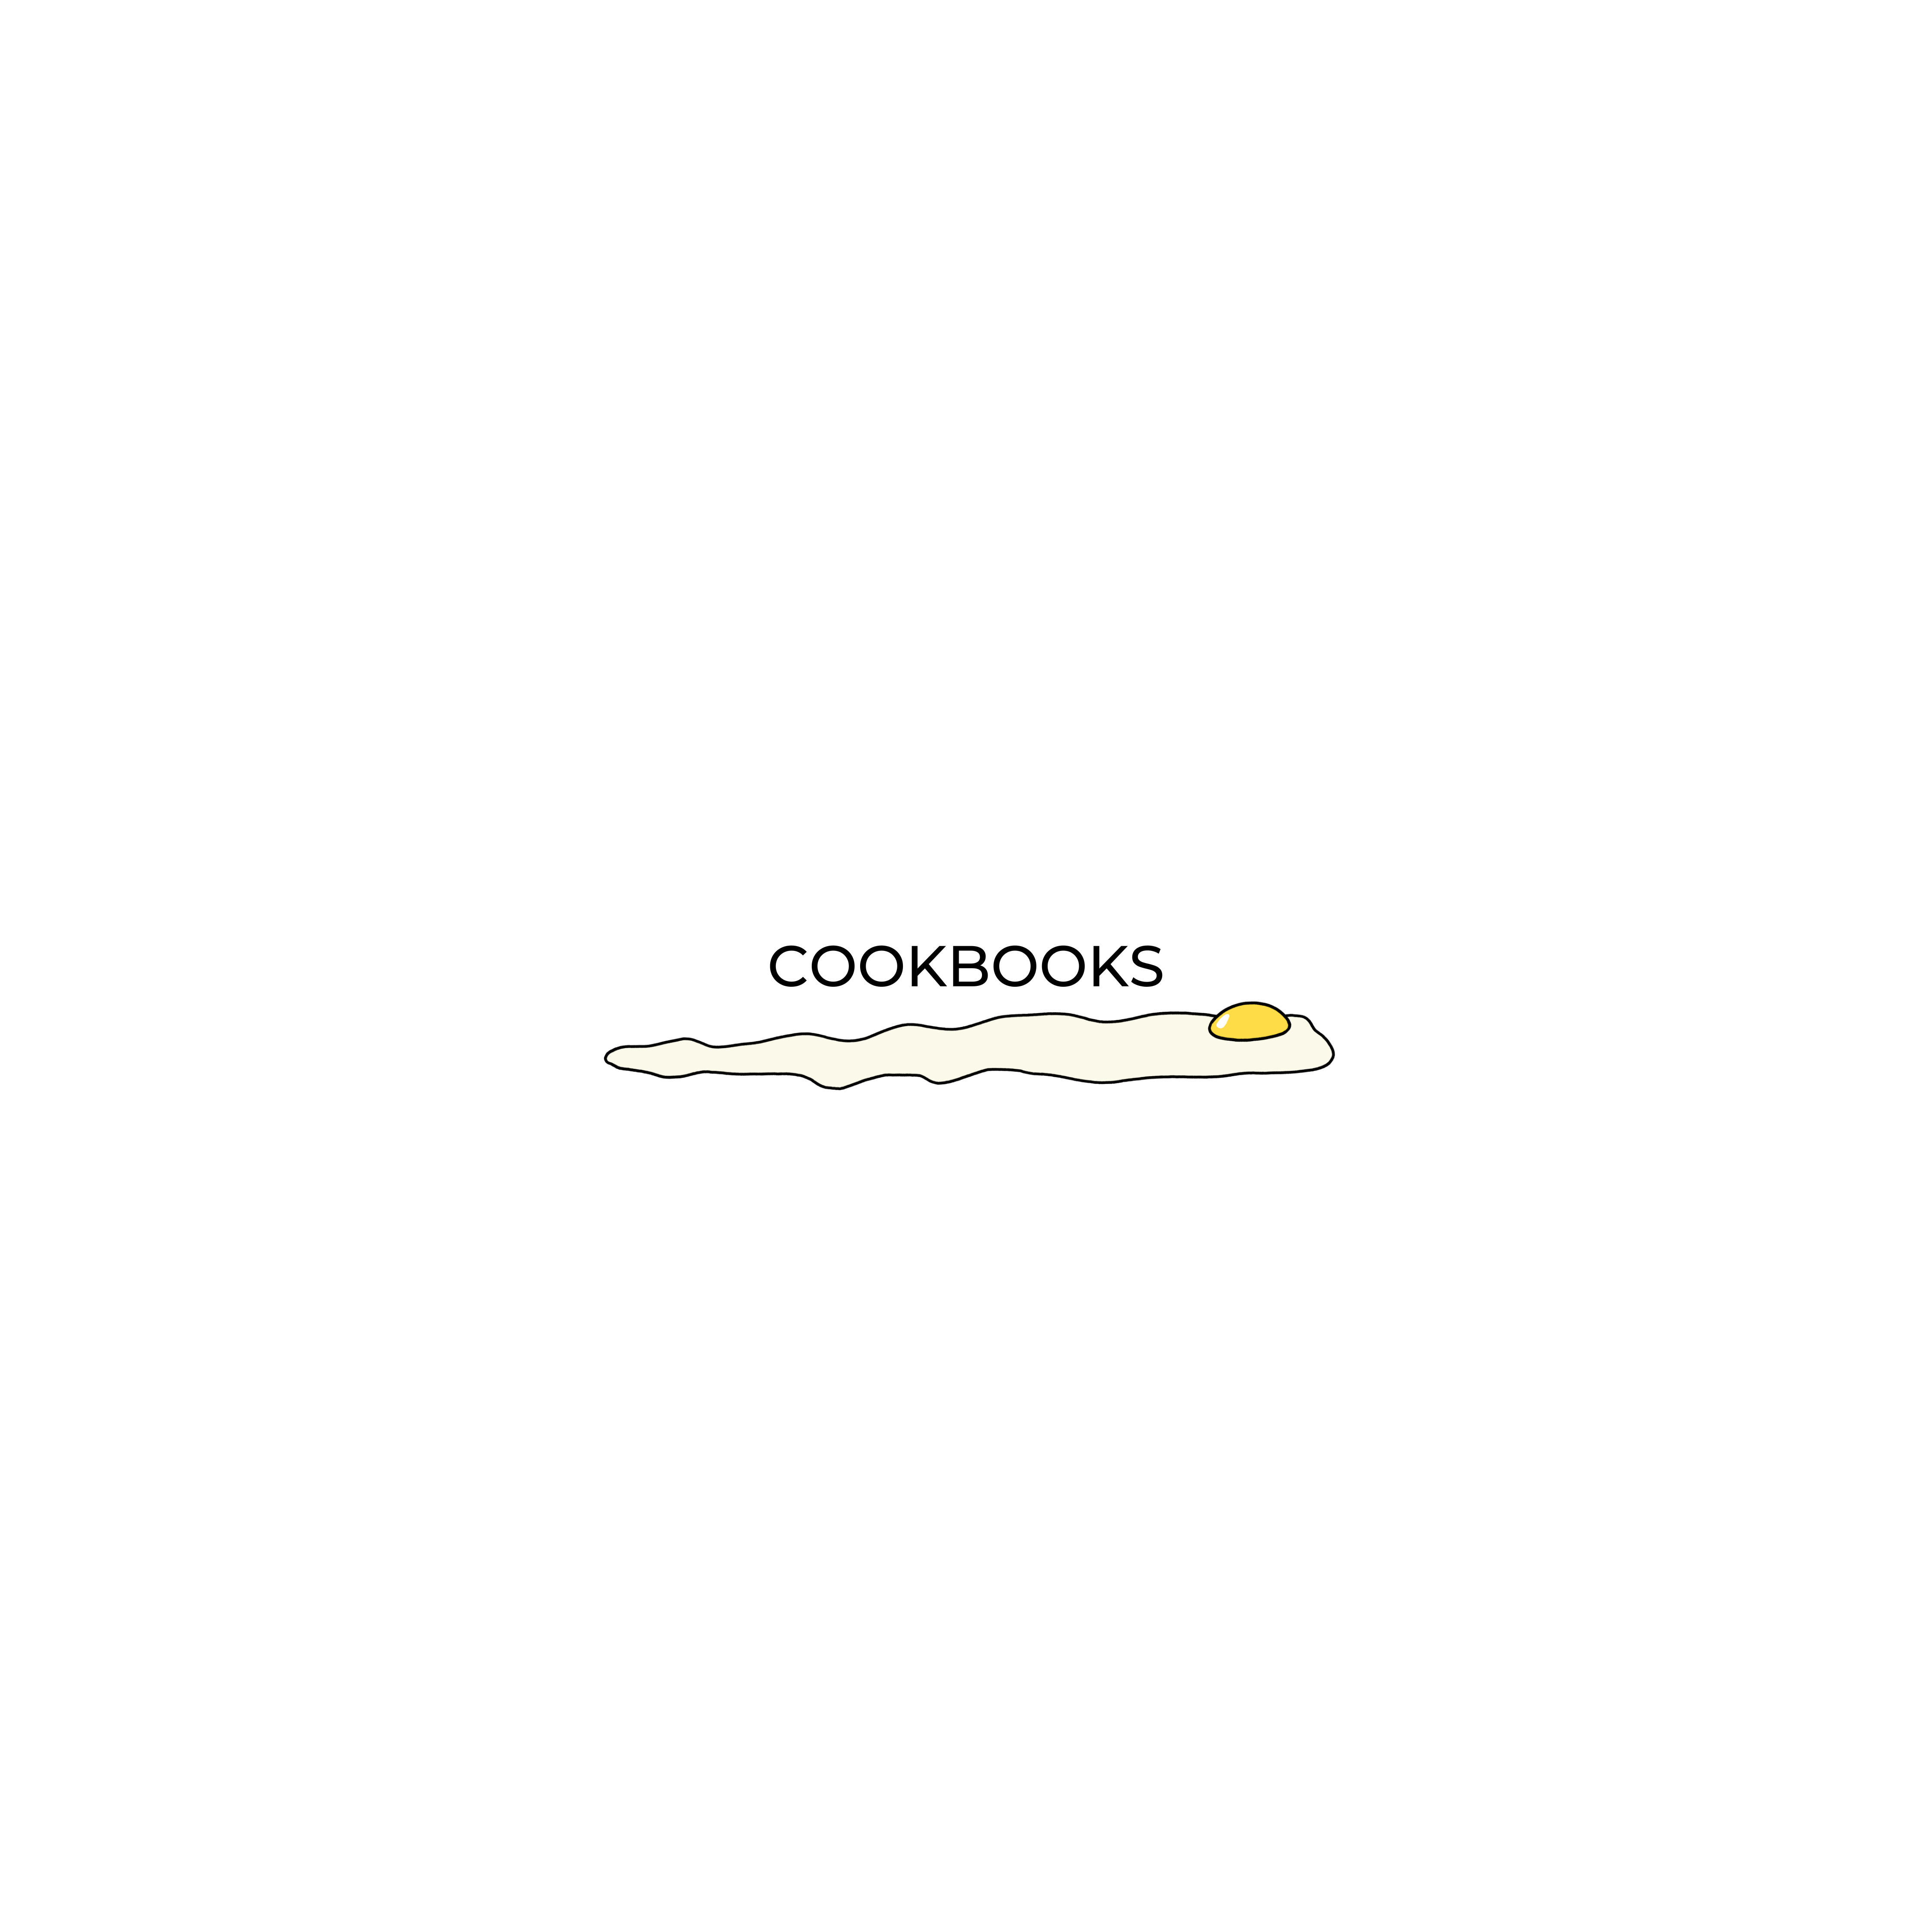 COOKBOOKS